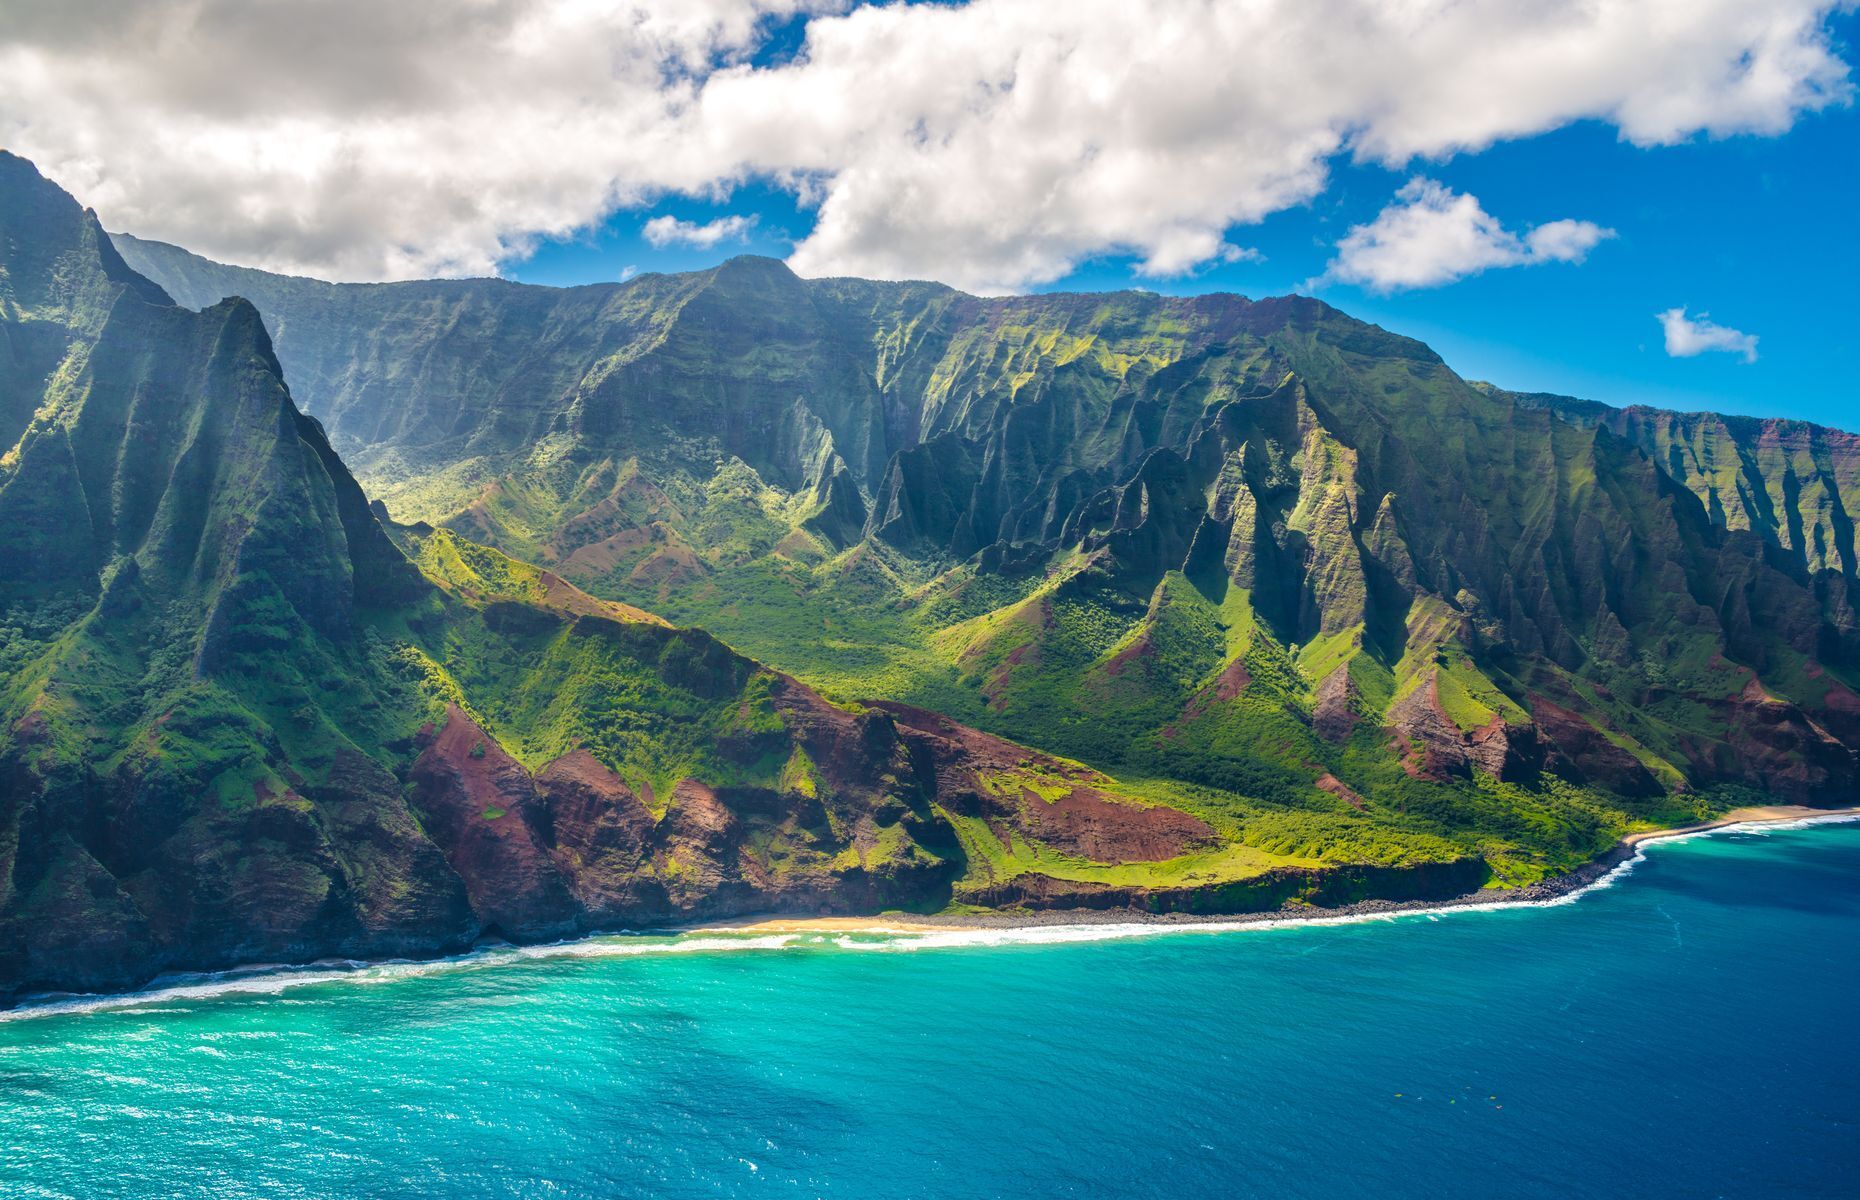 <p>Surnommée «l’île jardin», <a href="https://www.gohawaii.com/fr/islands/kauai">Kauai</a> à Hawaï, vous donnera l’impression de vous balader dans un véritable paradis terrestre. Parmi les arrêts incontournables à y faire, ne manquez pas les cascades majestueuses de Wailua, la magnifique baie d’Hanalei et le canyon de Waimea. Les amateurs de plein air pourront également s’aventurer sur la rivière Wailua en kayak ou faire une randonnée le long du sentier de Kalalau sur la côte de Na Pali. Chose certaine, vous ne vous ennuierez pas sur cette île aussi vibrante que paisible.</p>